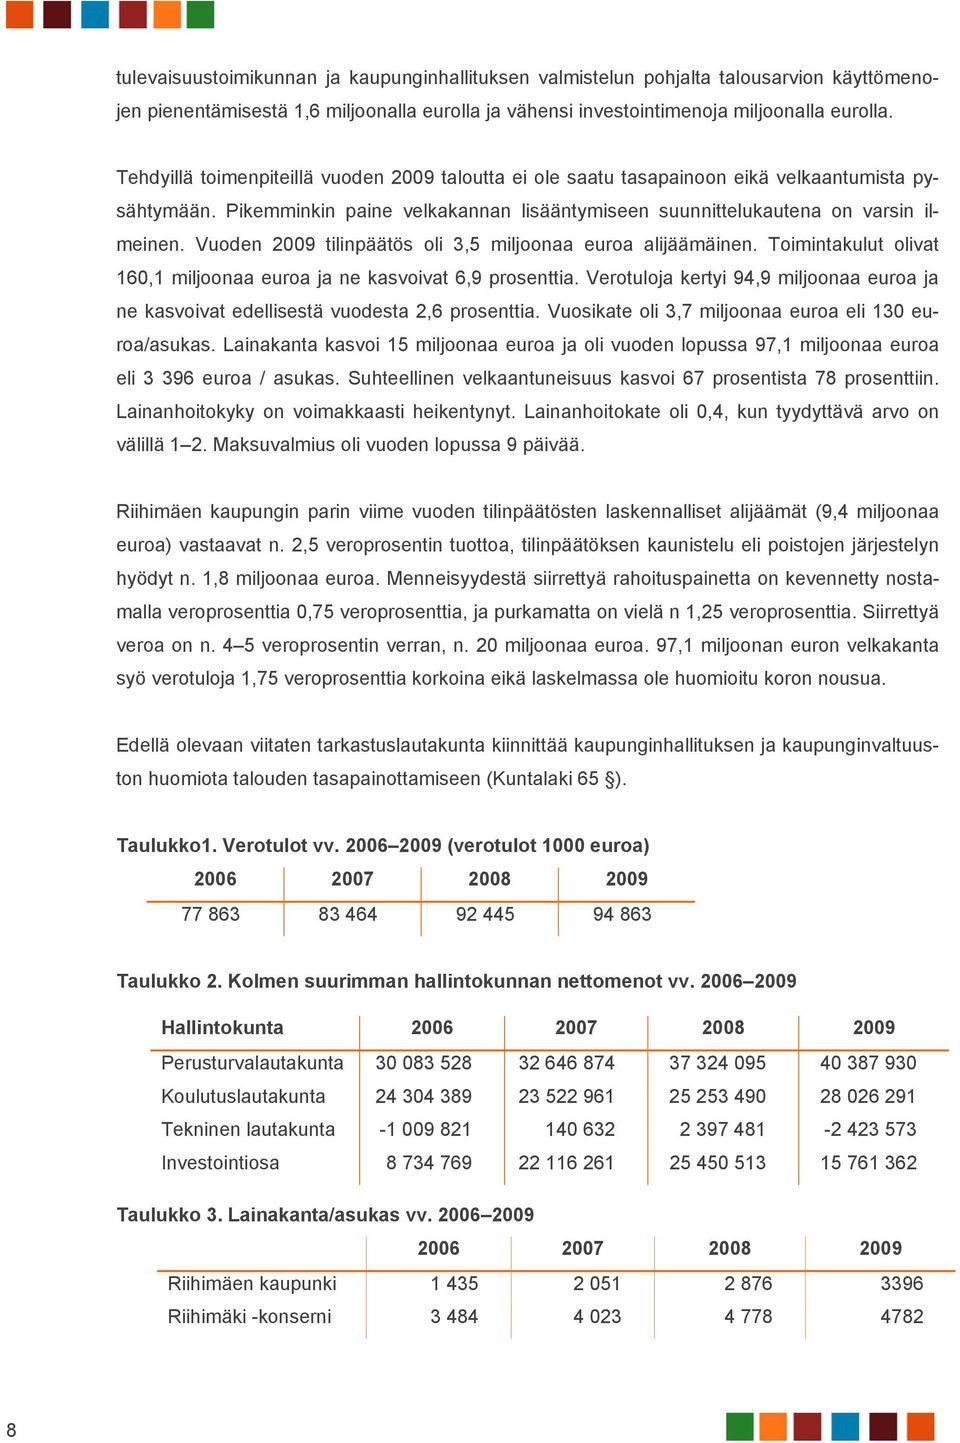 Vuoden 2009 tilinpäätös oli 3,5 miljoonaa euroa alijäämäinen. Toimintakulut olivat 160,1 miljoonaa euroa ja ne kasvoivat 6,9 prosenttia.